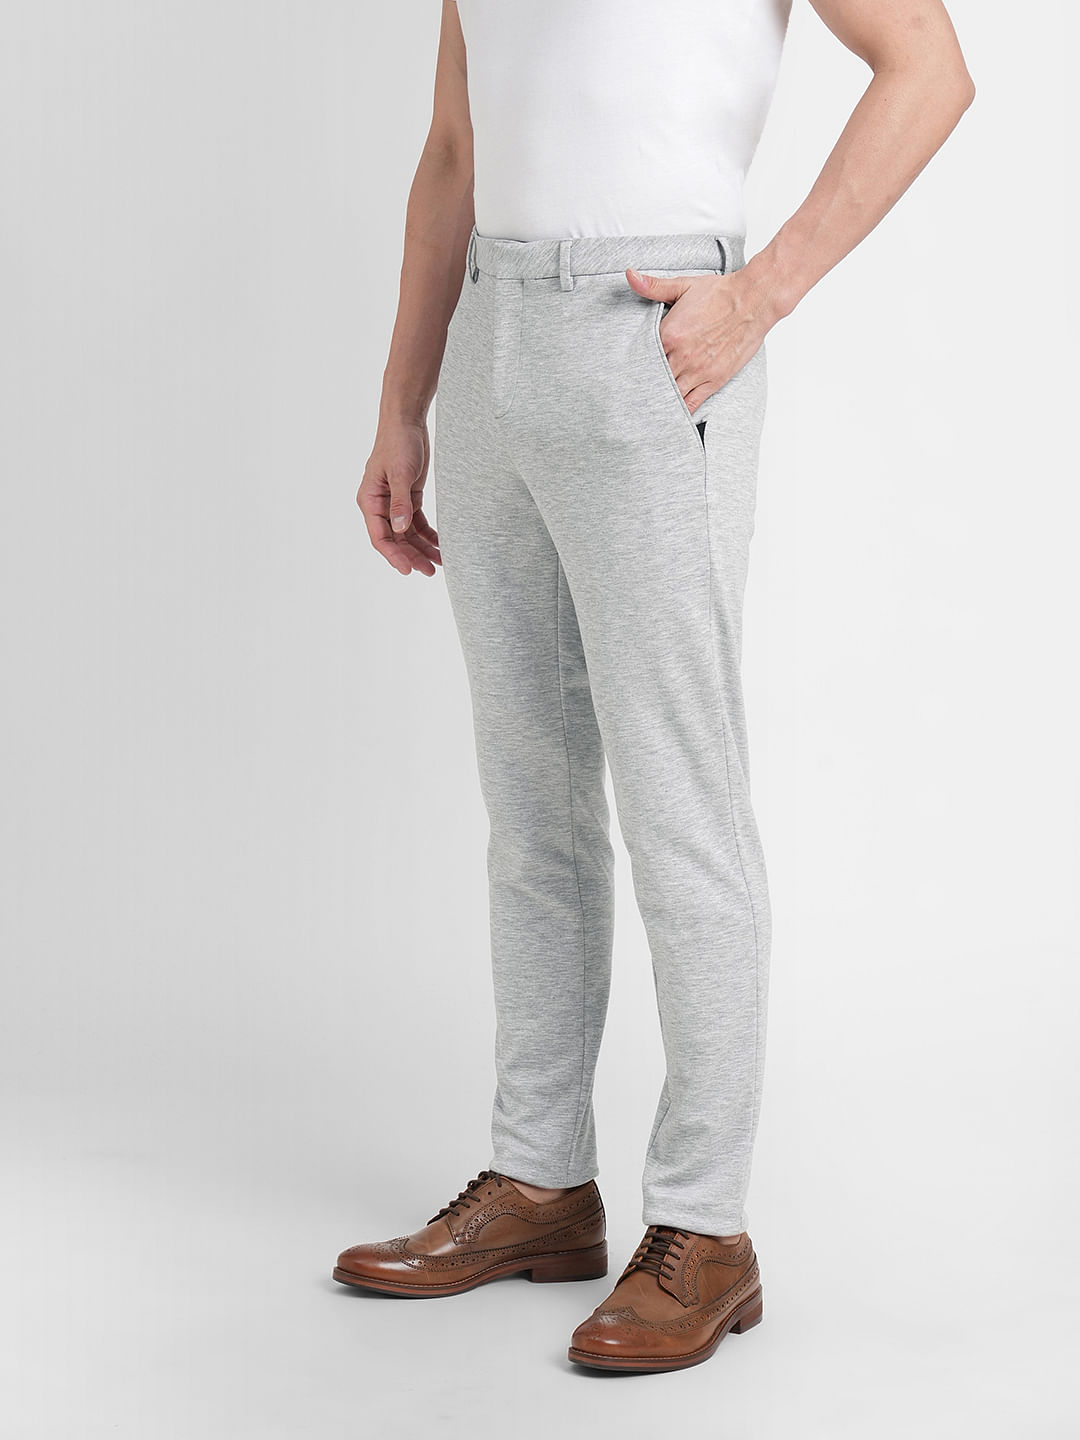 Buy Van Heusen Grey Trousers Online - 806552 | Van Heusen